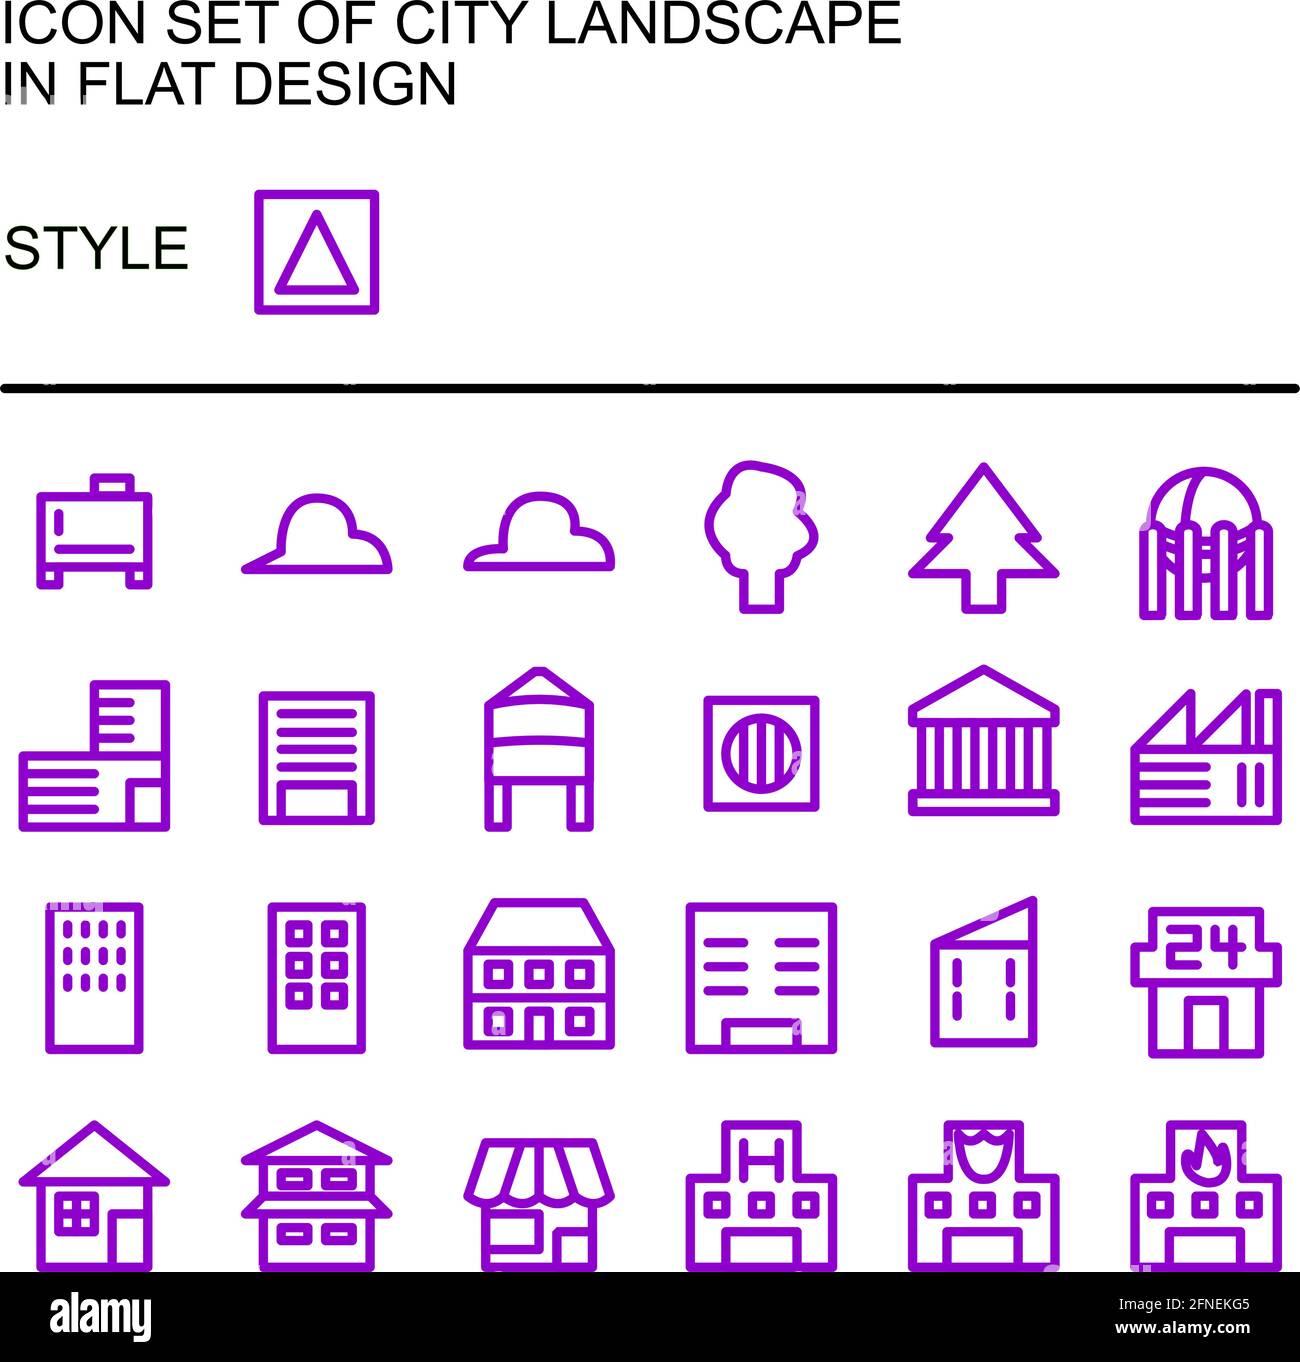 Icona del paesaggio urbano in design piatto con linee viola e riempimenti bianchi. Illustrazione Vettoriale